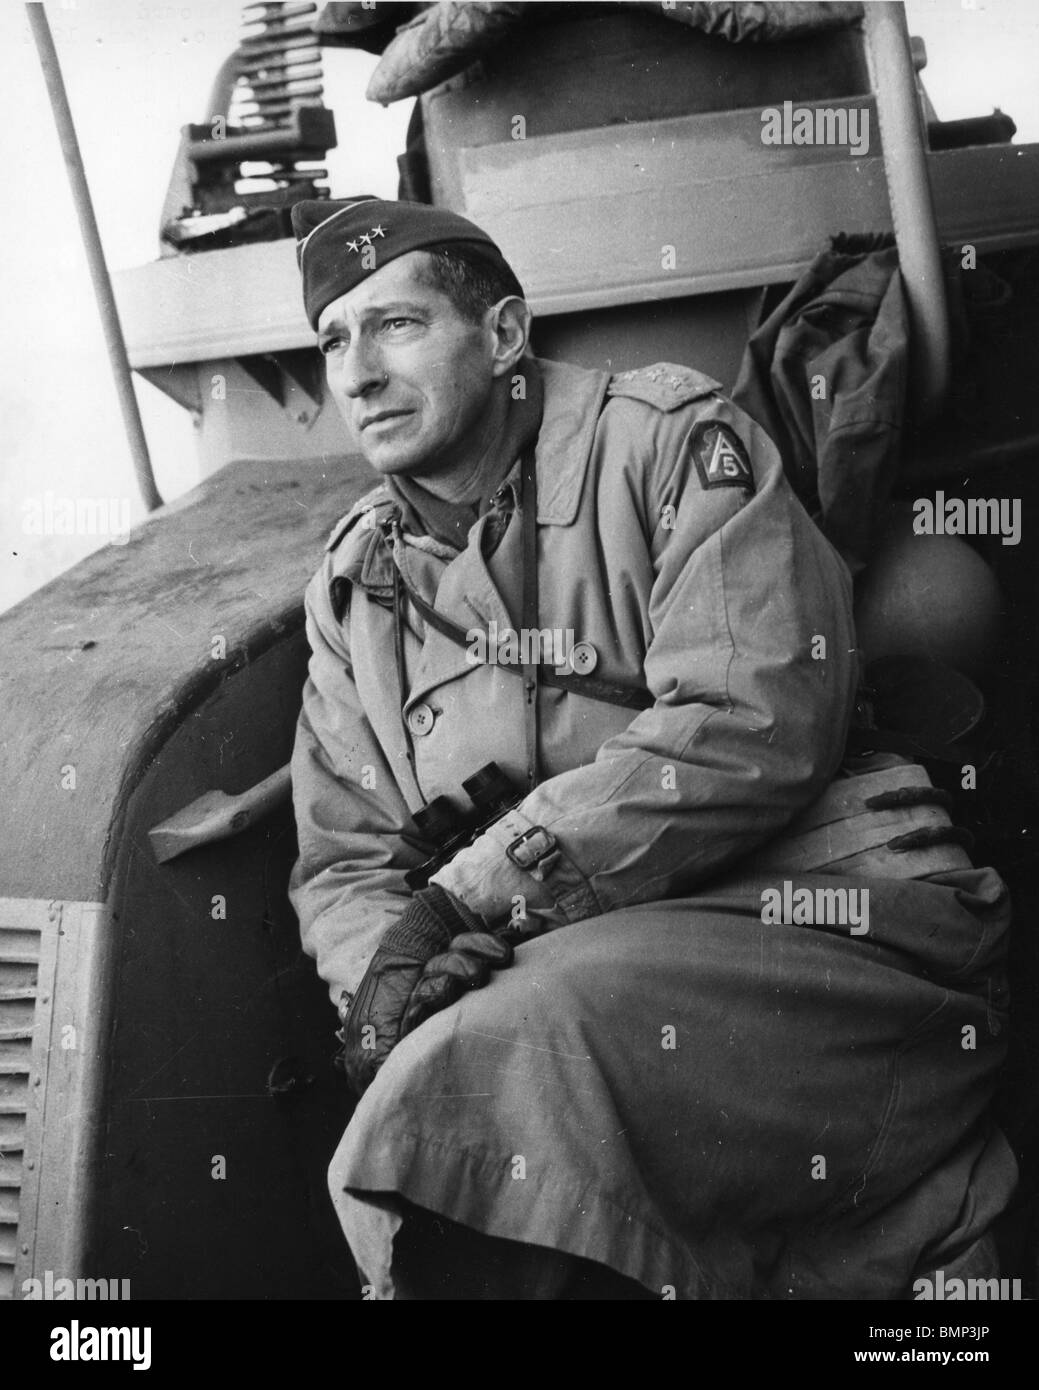 LT GEN Mark W. Clark, Comandante General del Ejército, nosotros quinto PT, a bordo de un barco rumbo al Anzio beachead, Italia, enero de 1944 Foto de stock